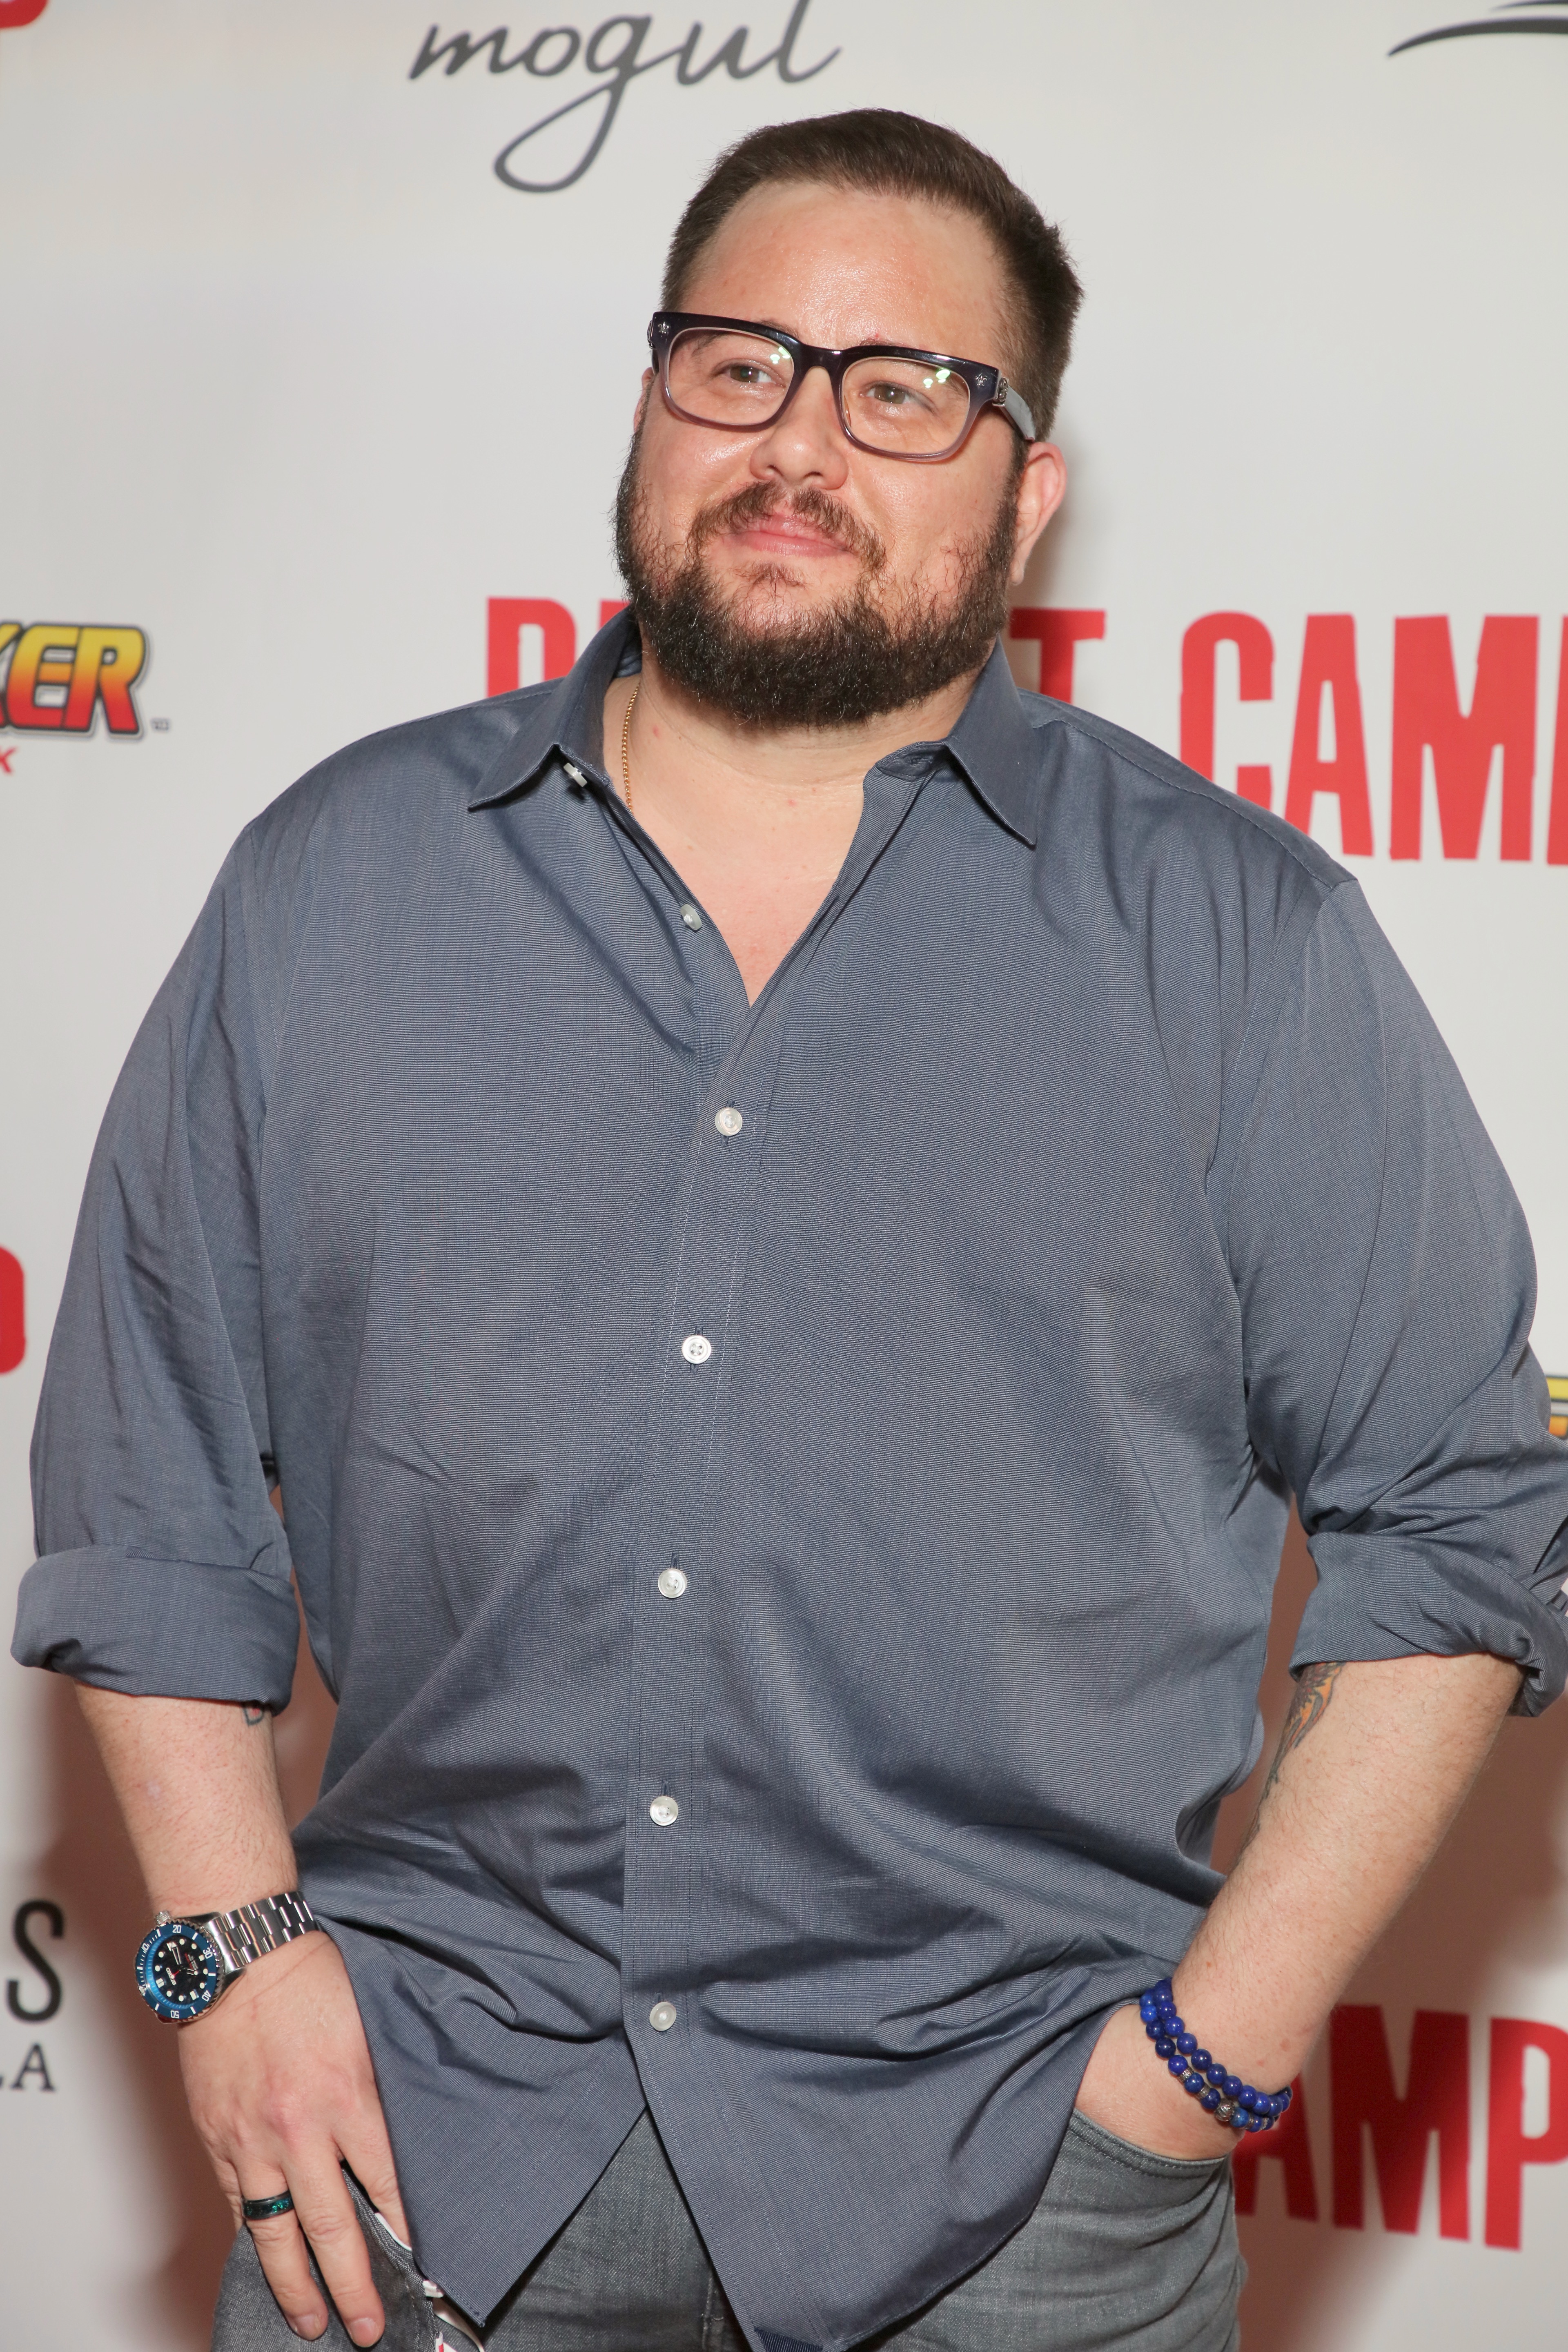 Chaz Bono asiste a la proyección de Mogul Productions para "Reboot Camp" en Los Ángeles, California, el 21 de septiembre de 2021 | Foto: Getty Images